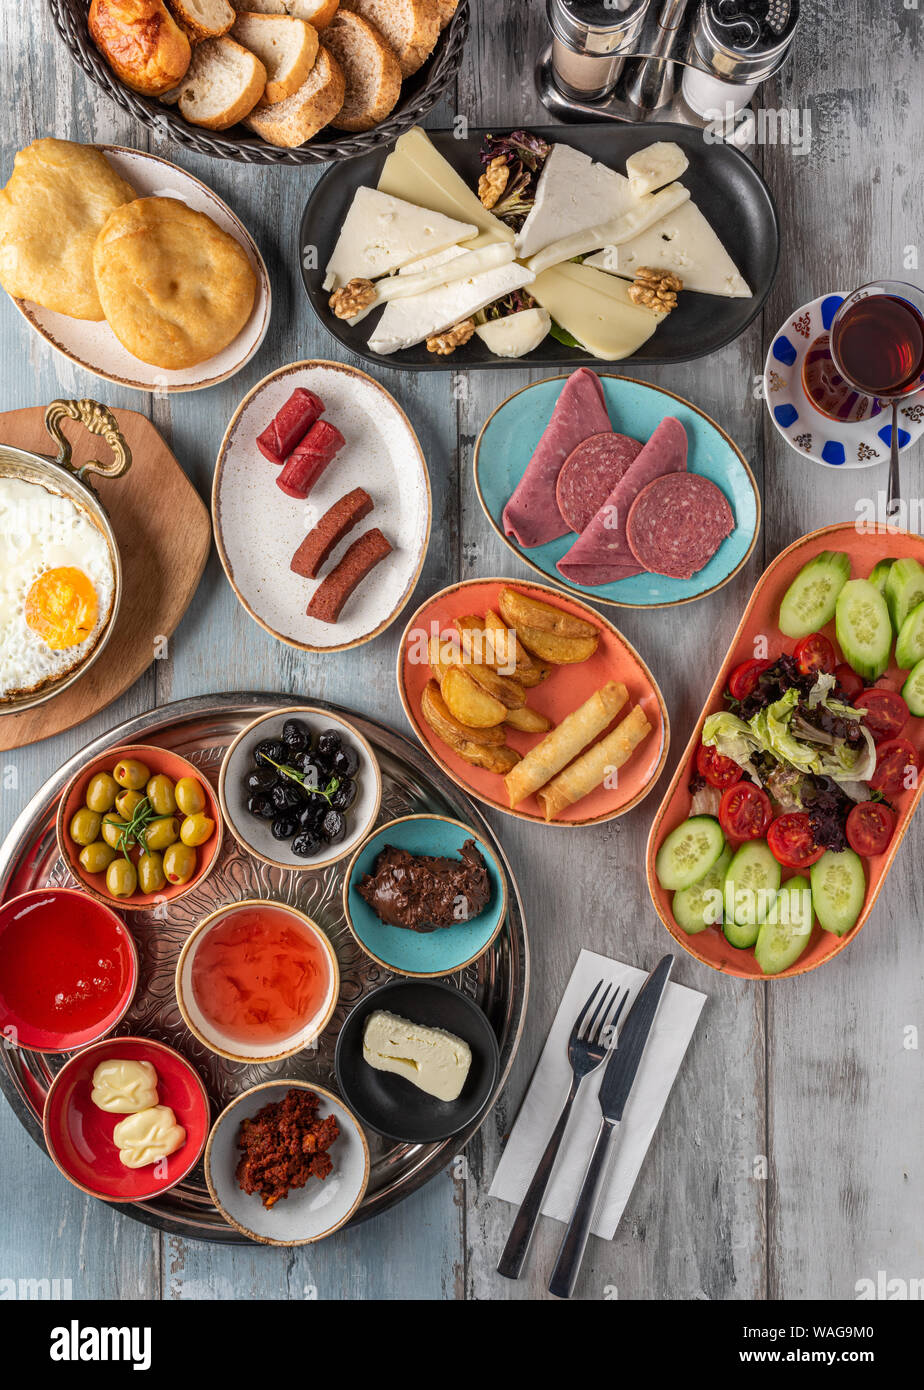 L'originale colazione moderna turca: un incontro di sapori